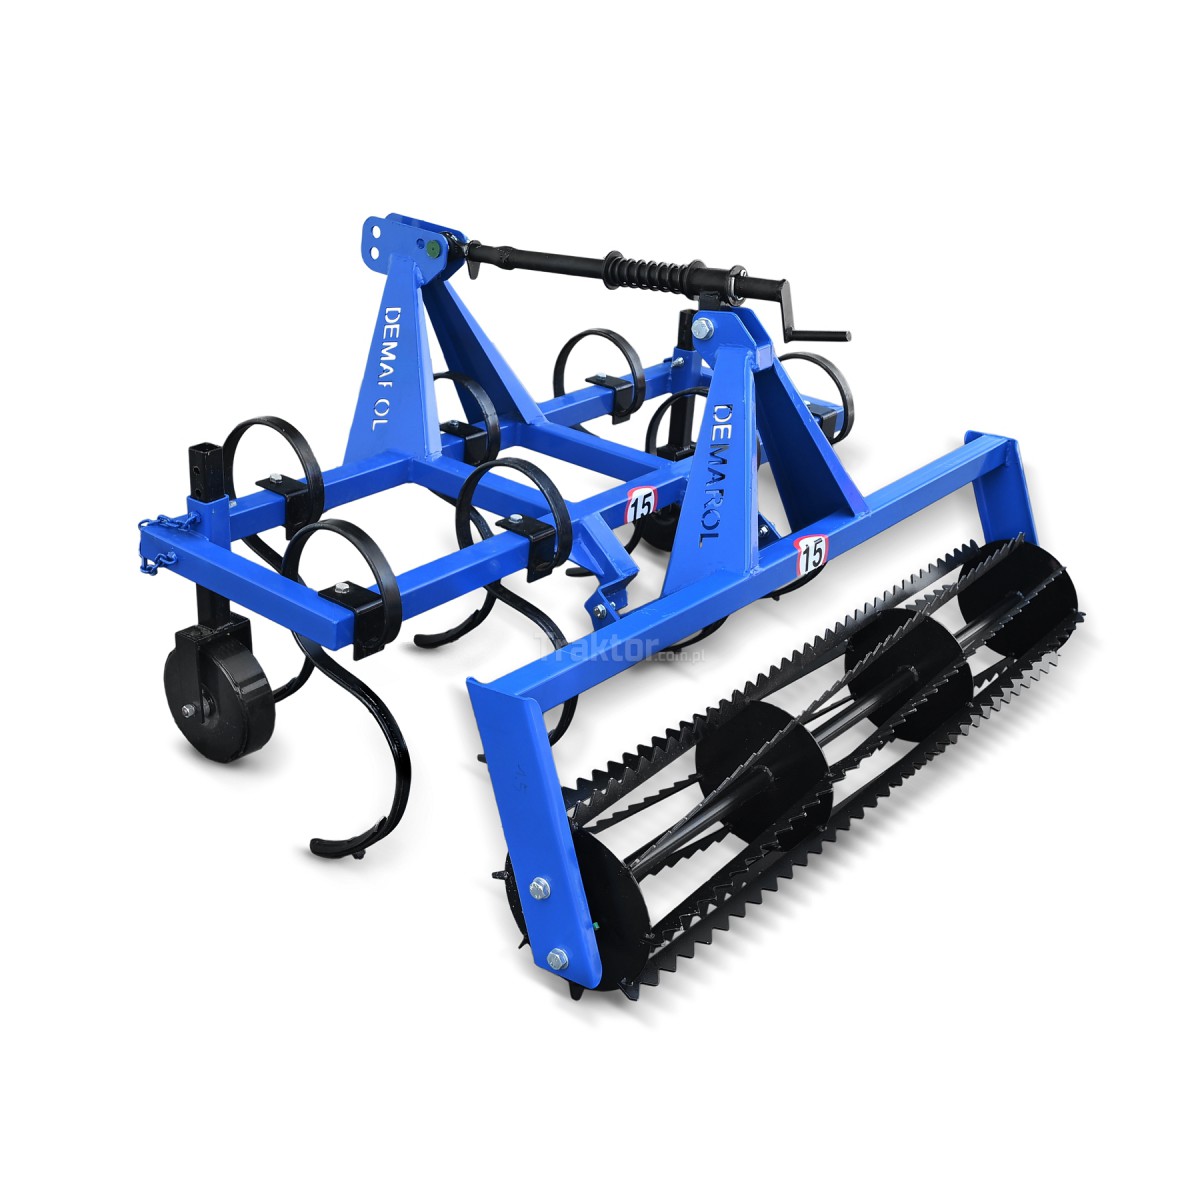 Cultivator 150 + Demarol string roller